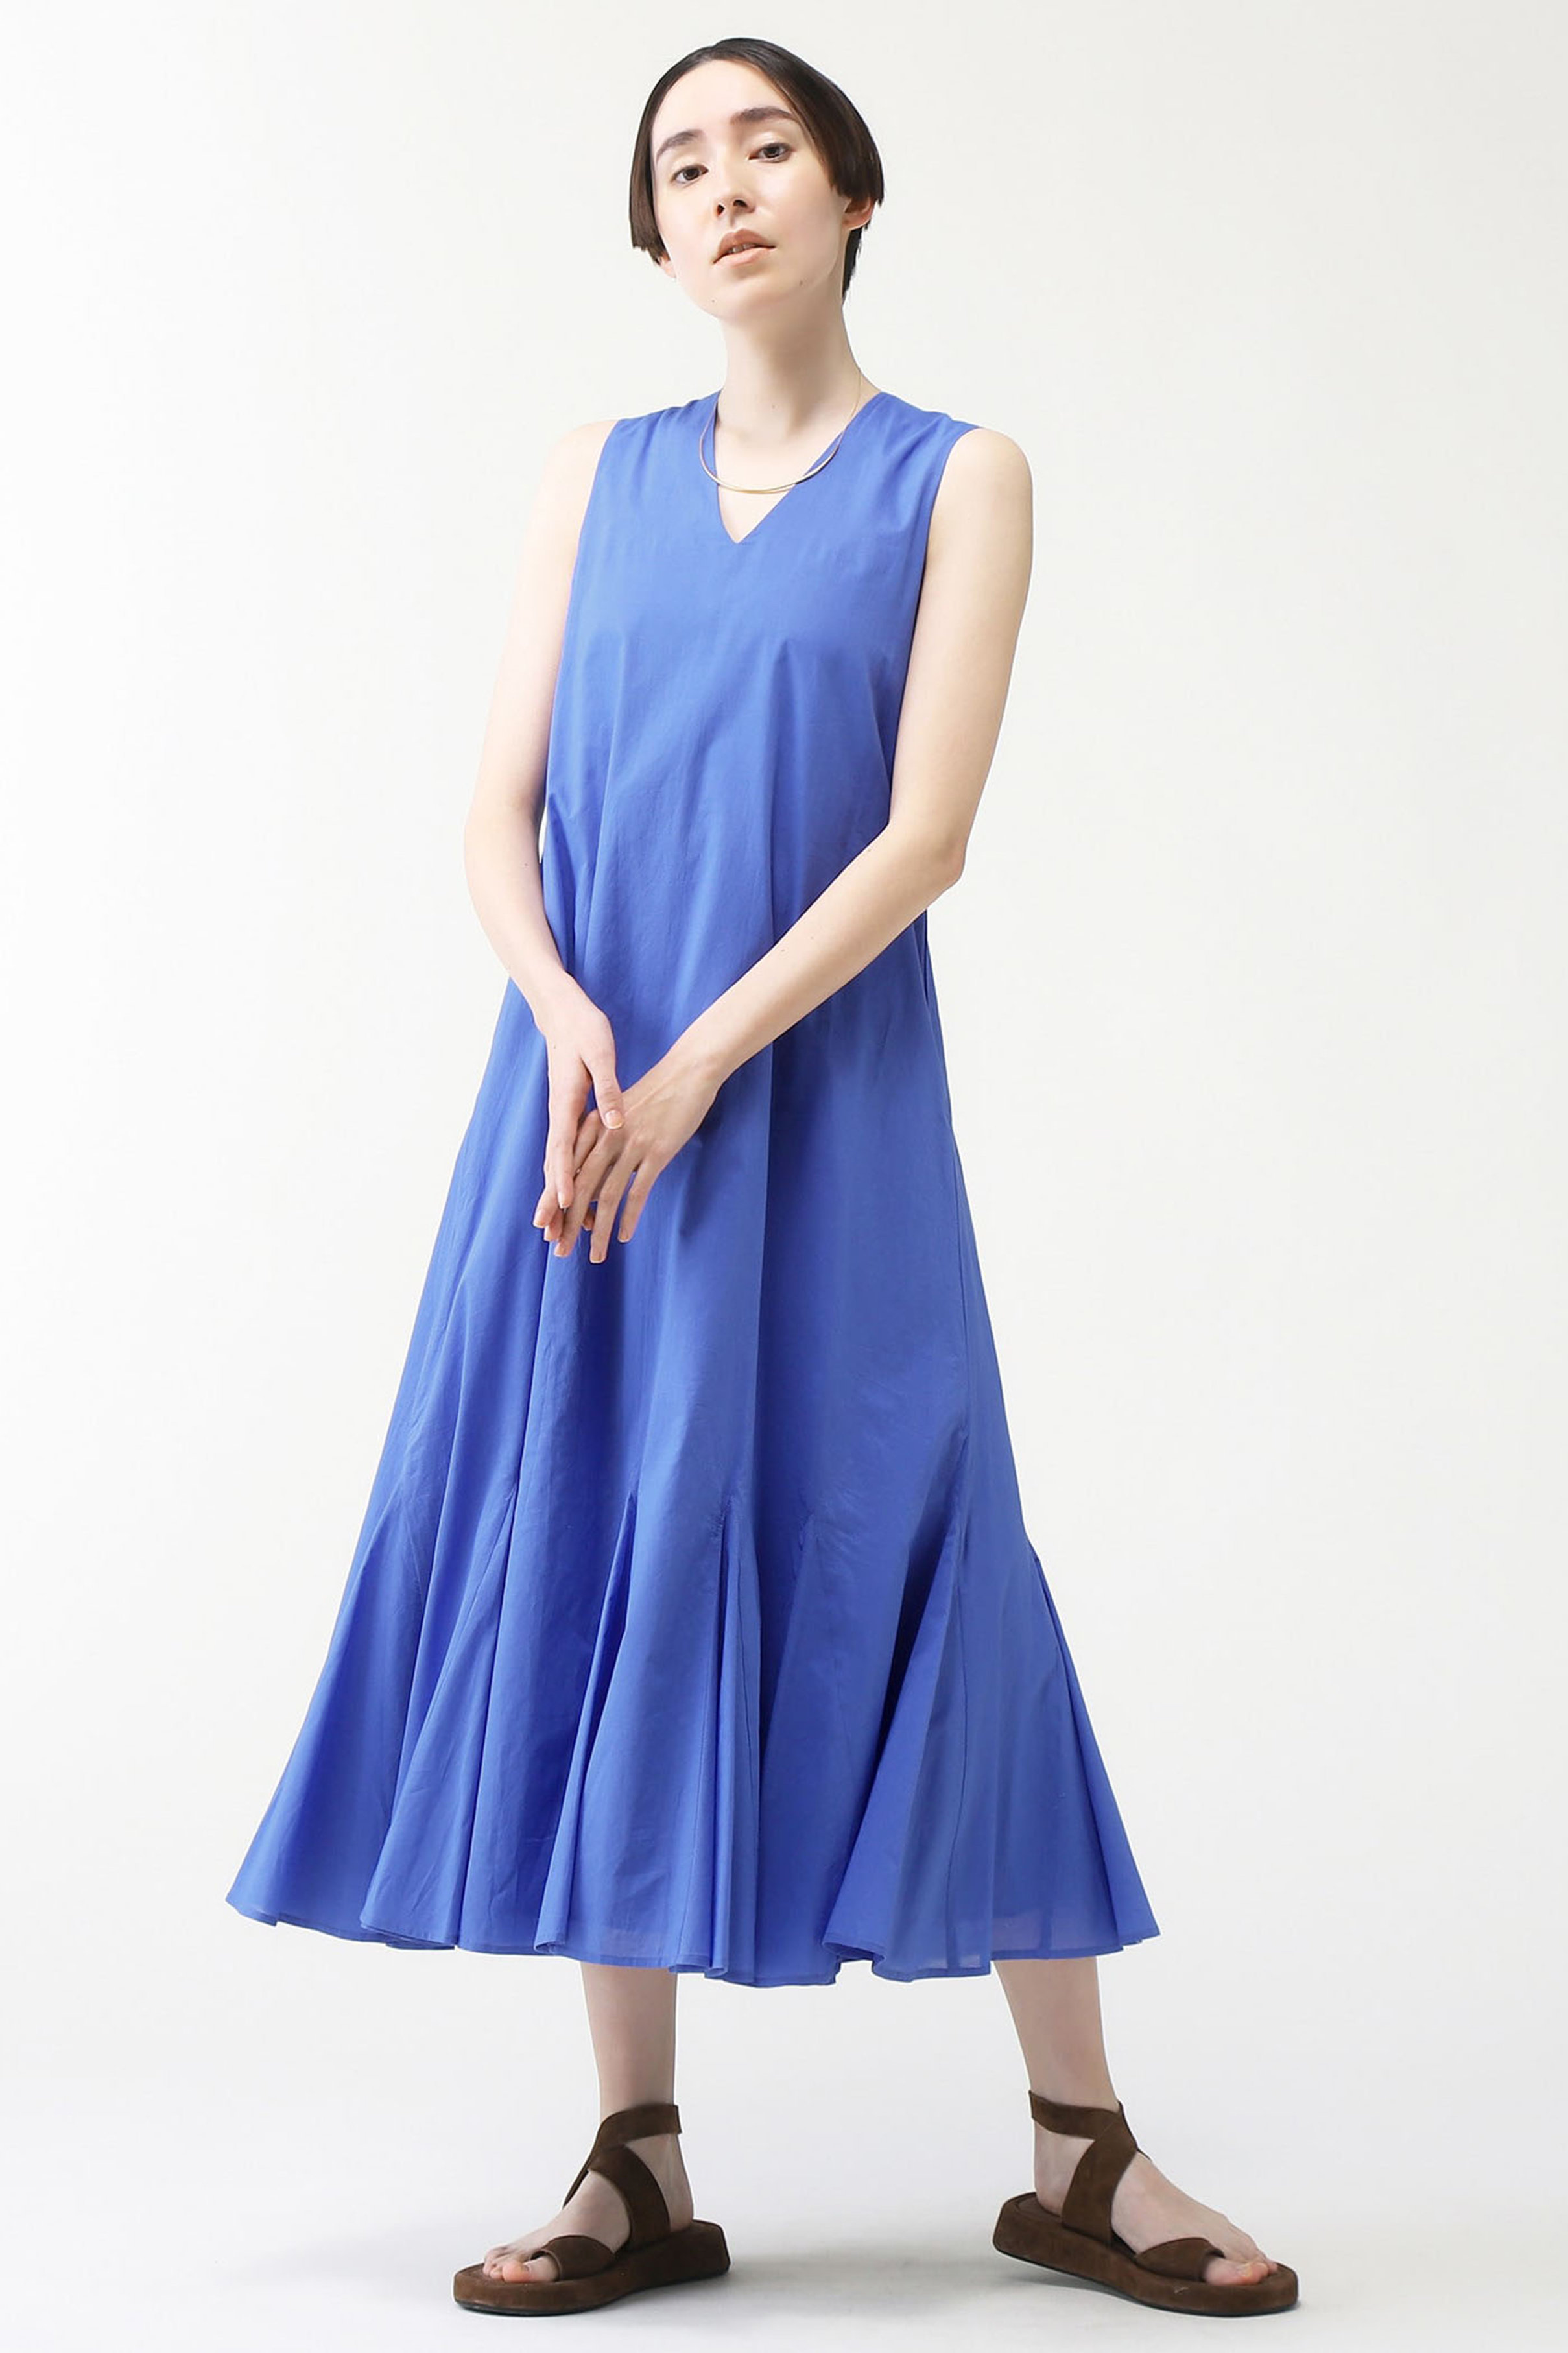 martinique 【MARIHA】夏の月影のドレスNS 別注カラー (ブルー, F) マルティニーク ELLE SHOP